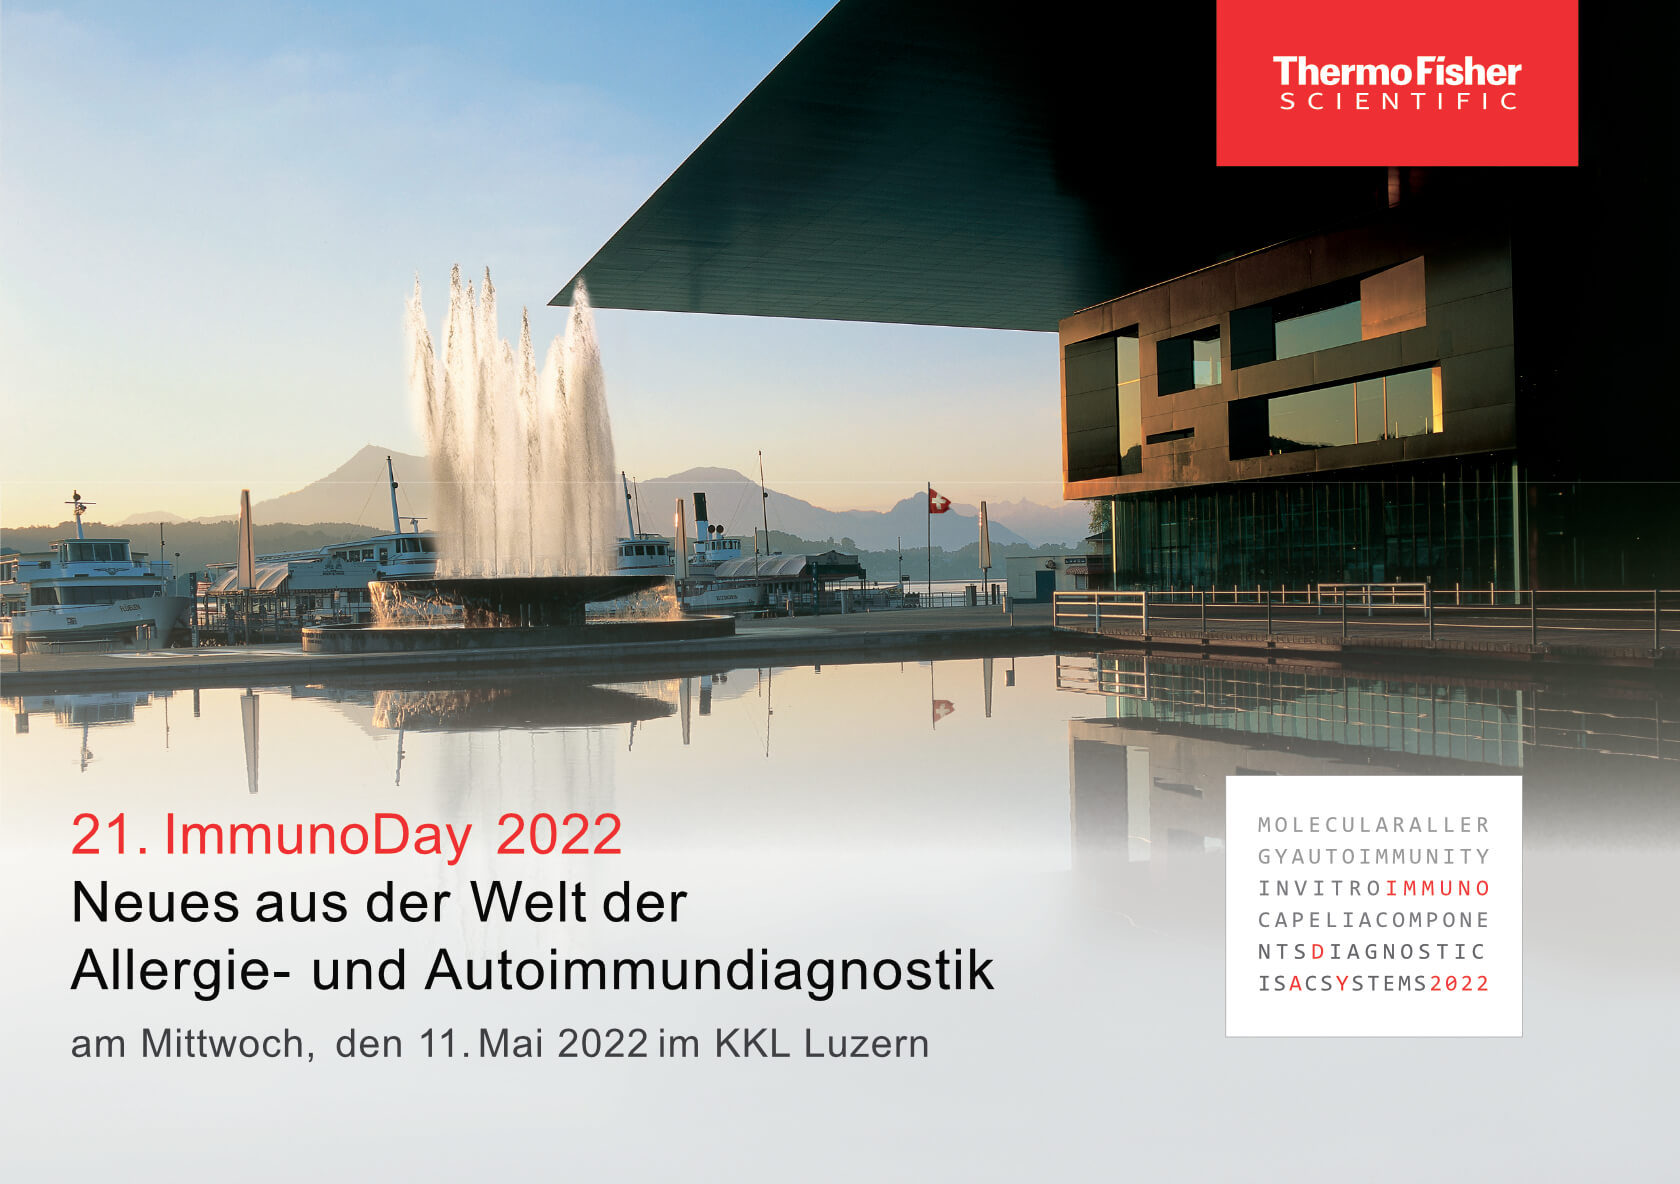 21. ImmunoDay 2022 am 11. Mai in Luzern